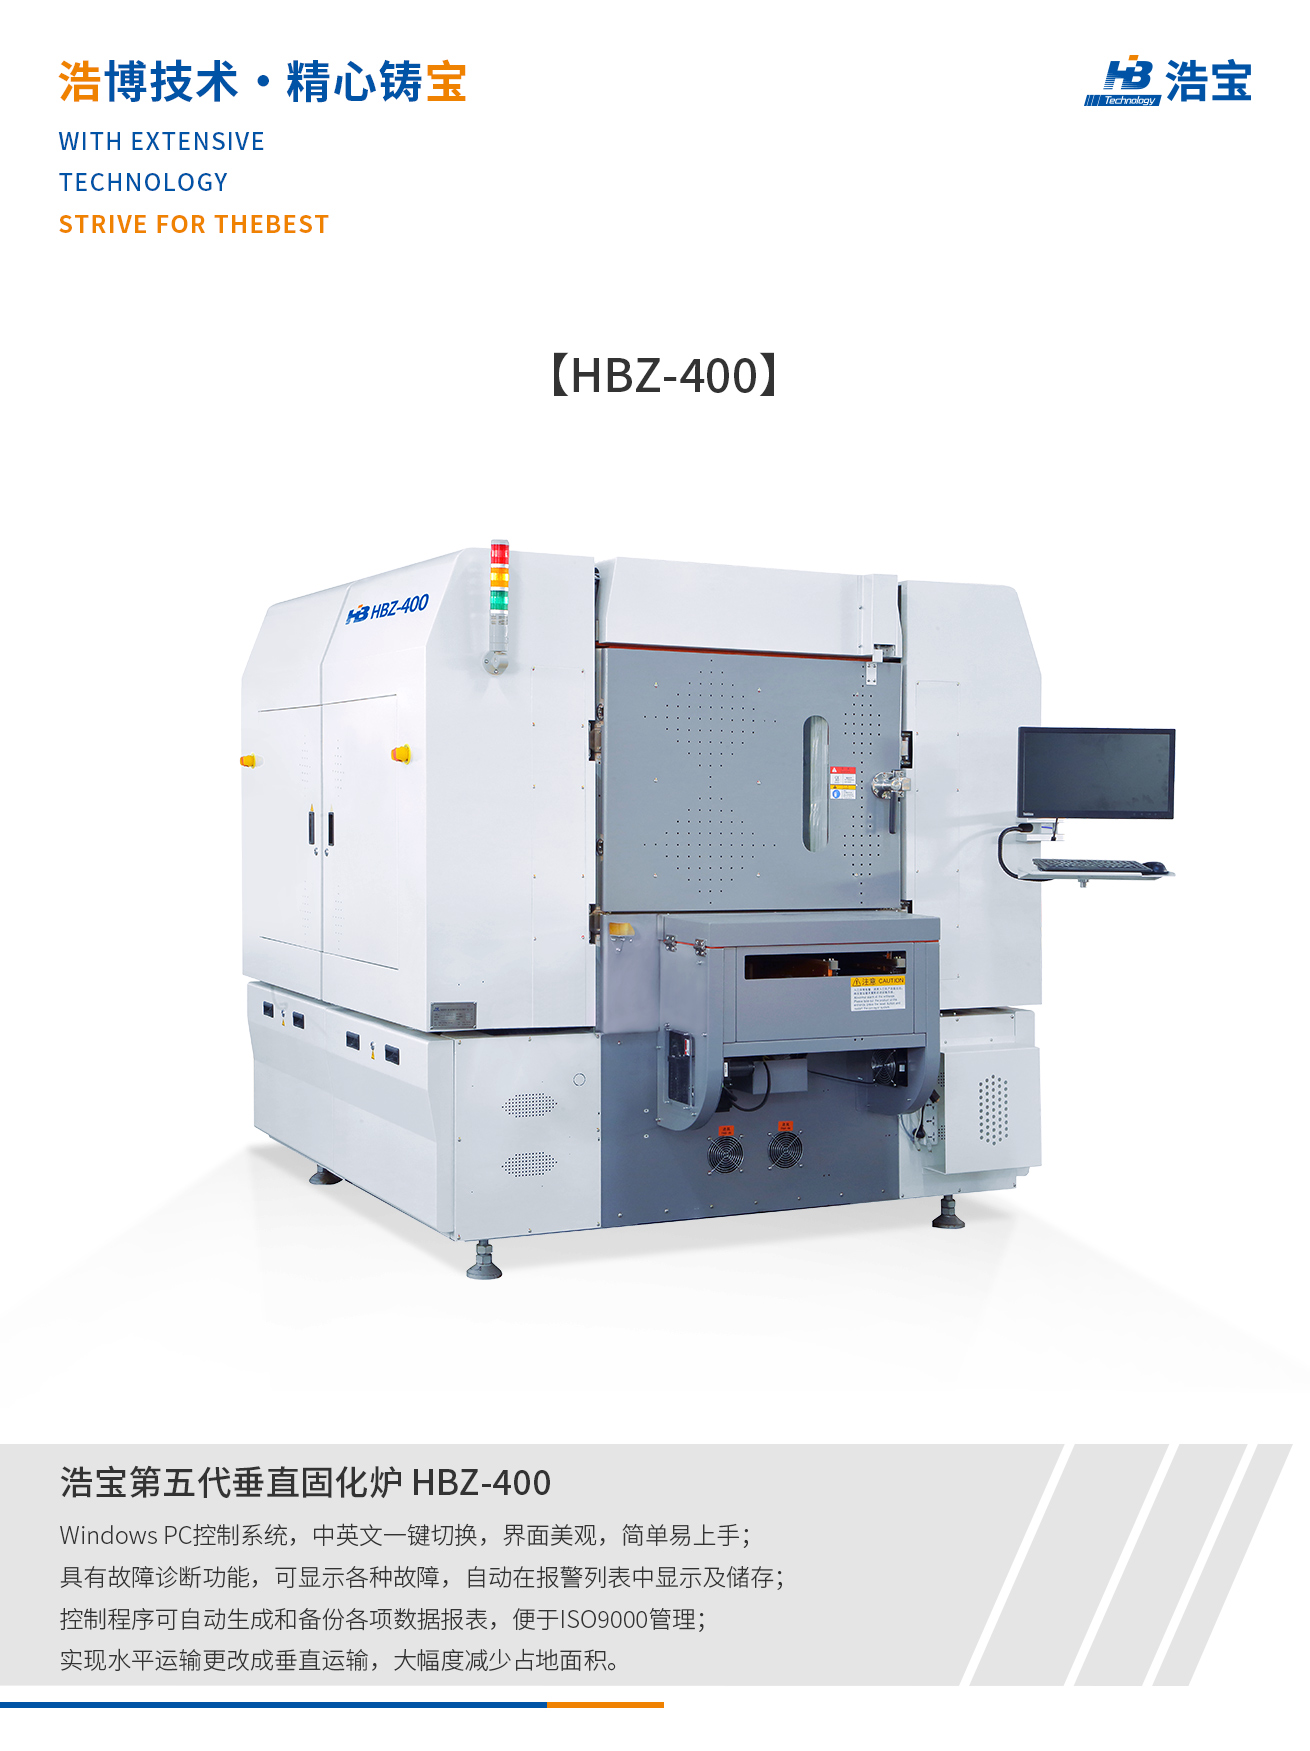 浩宝HBZ-400全自动在线垂直固化炉介绍